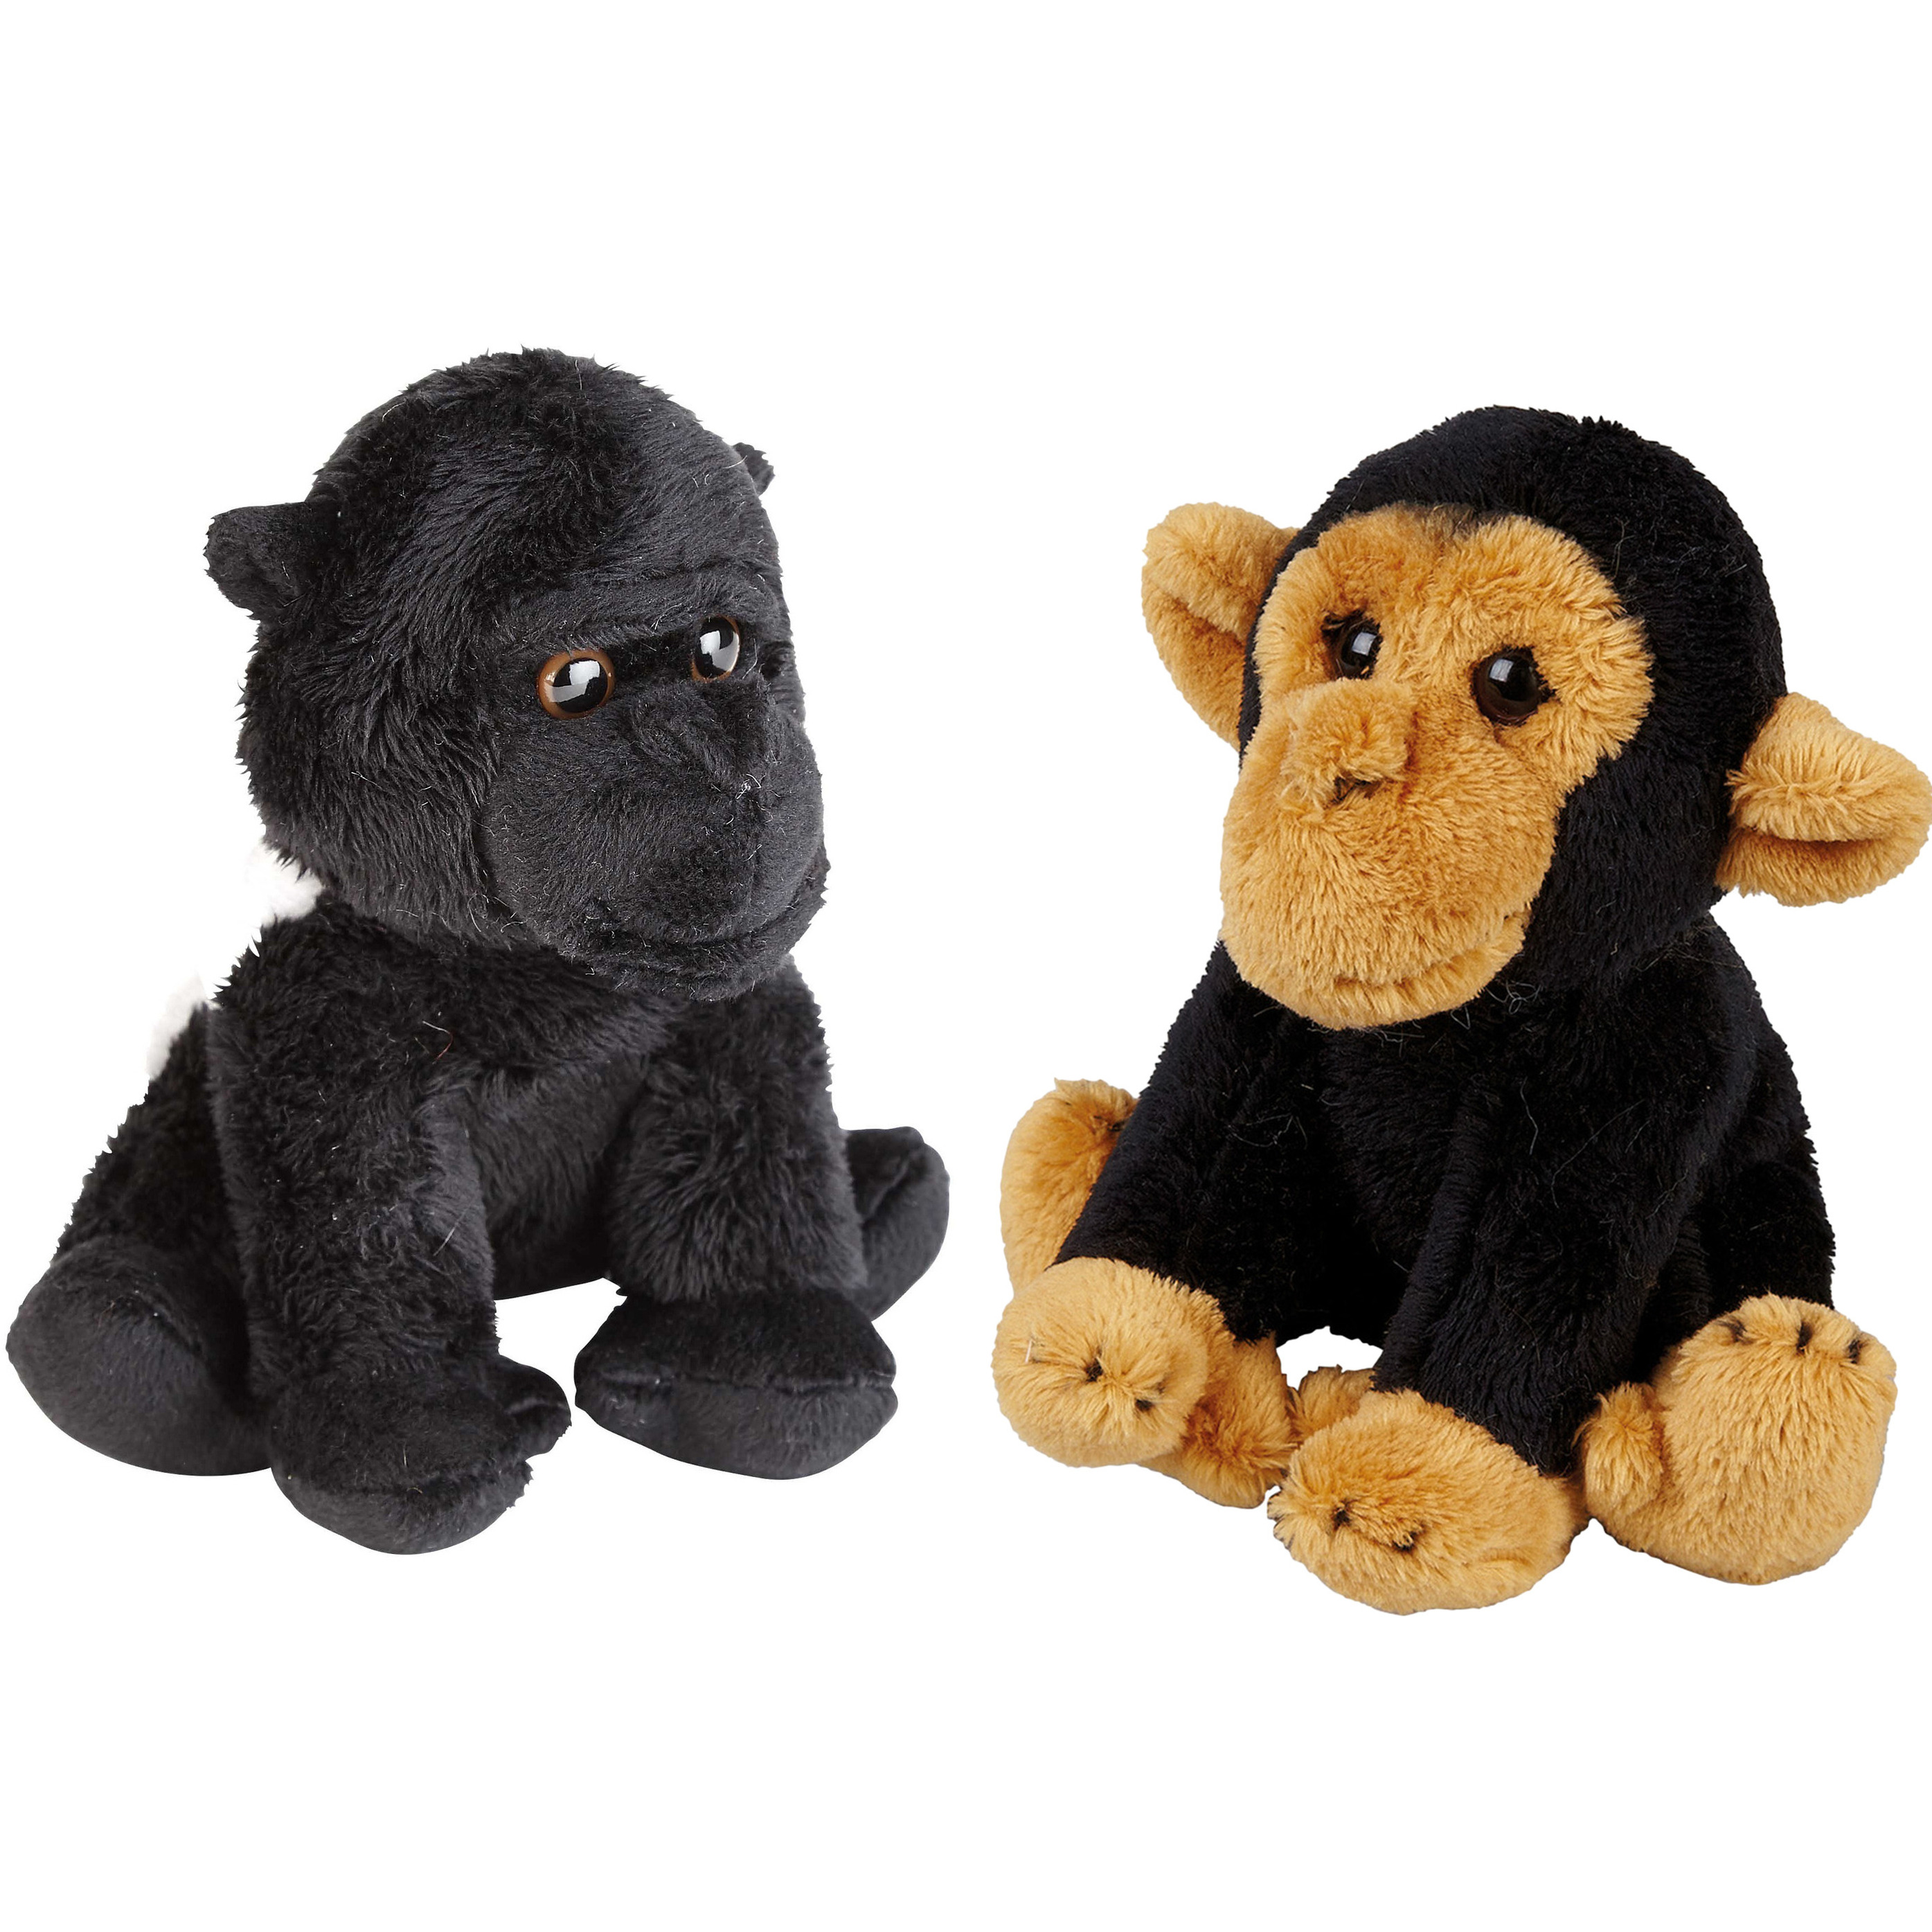 Ravensden Apen serie zachte pluche knuffels 2x stuks - Gorilla en Chimpansee aap van 15 cm -